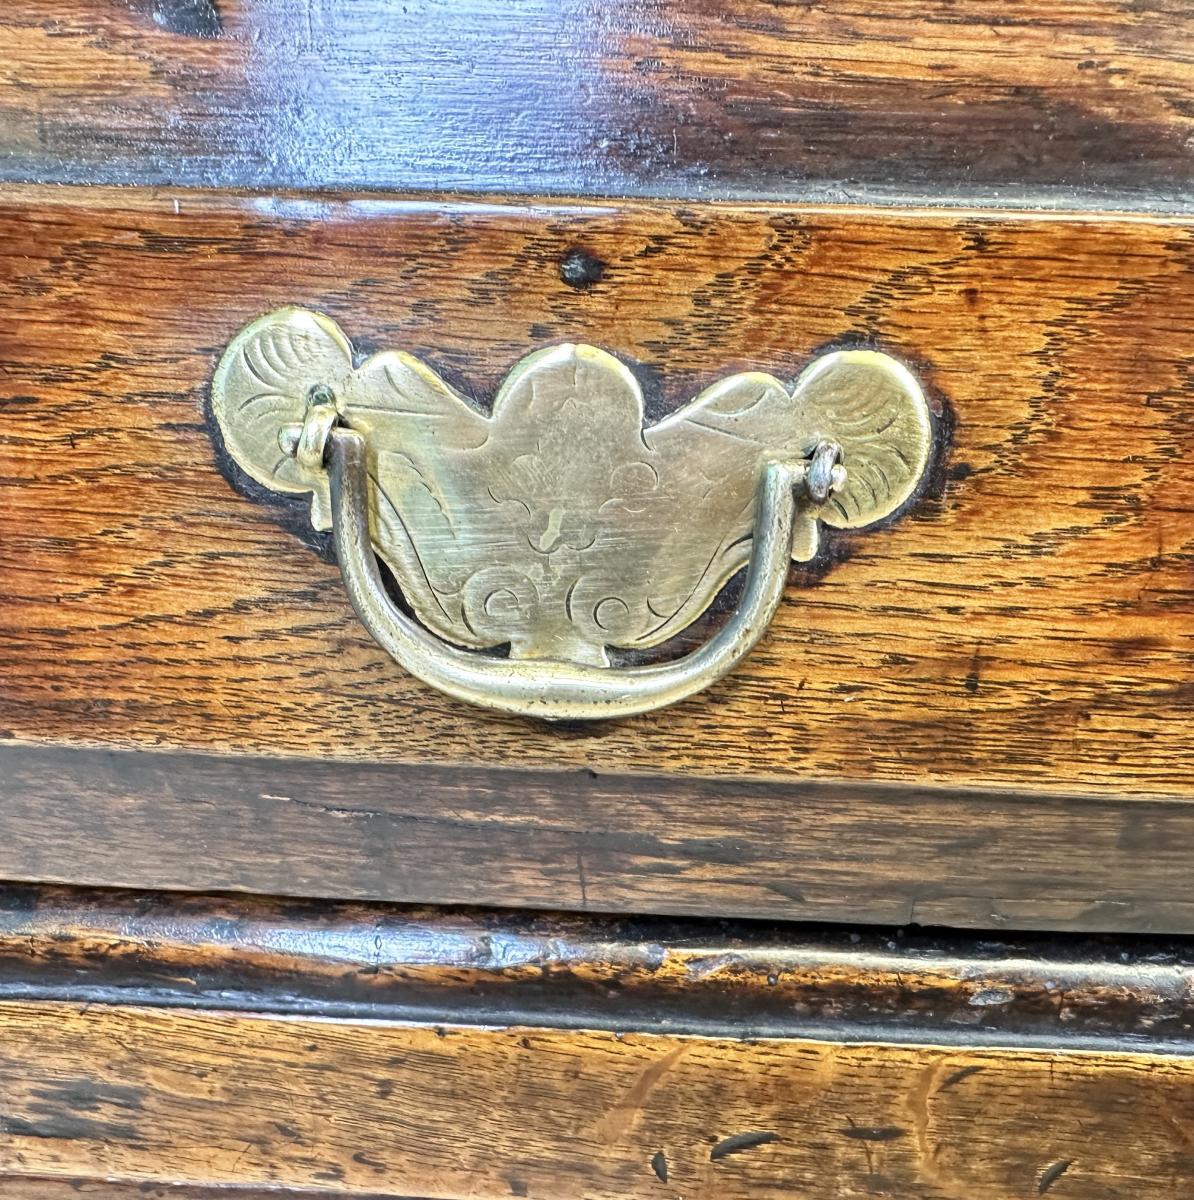 Early 18th Century Oak Dresser Cupboard